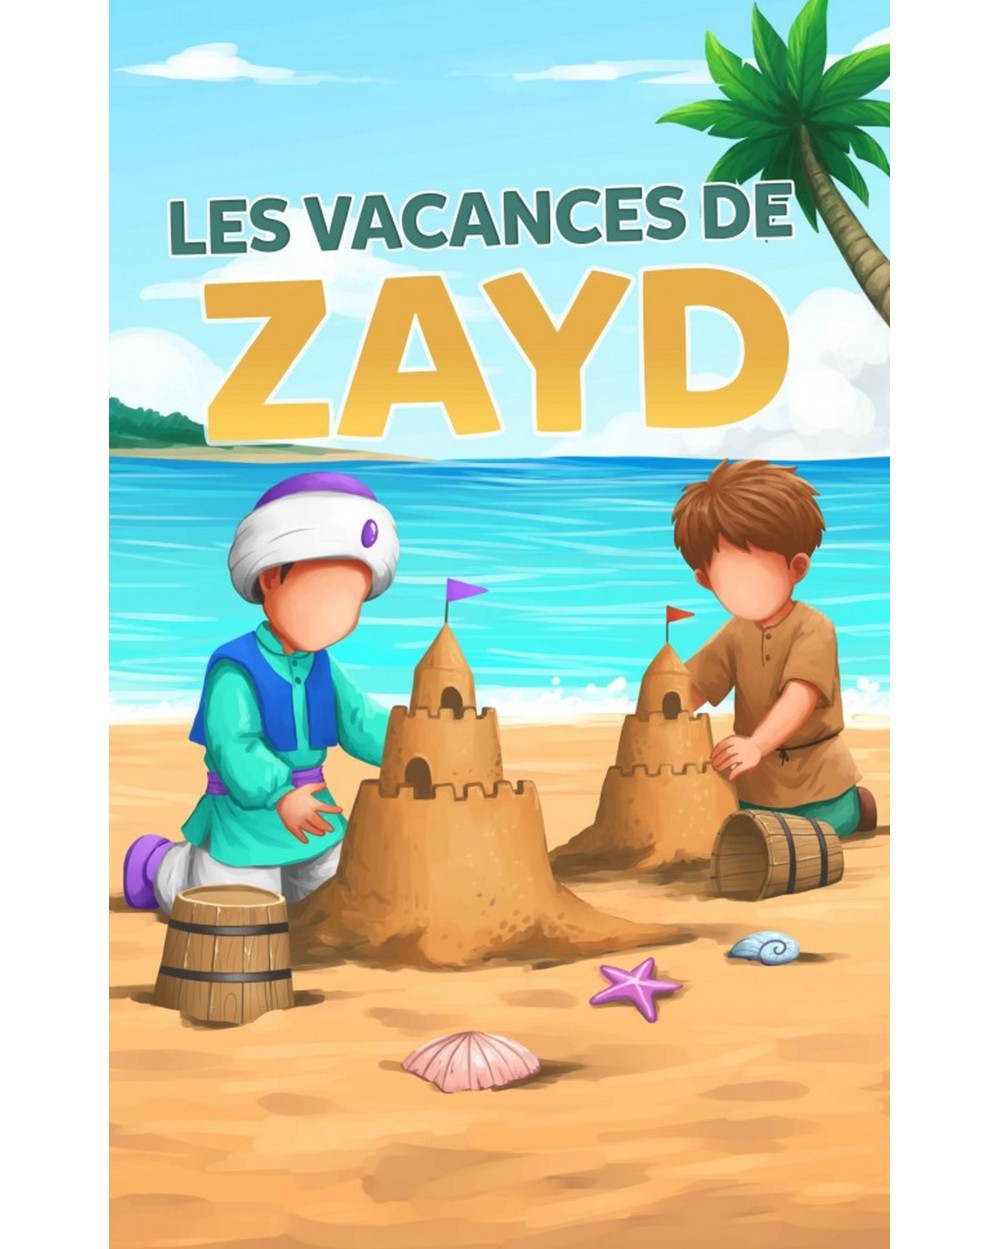 Les vacances de ZAYD - Muslimkid